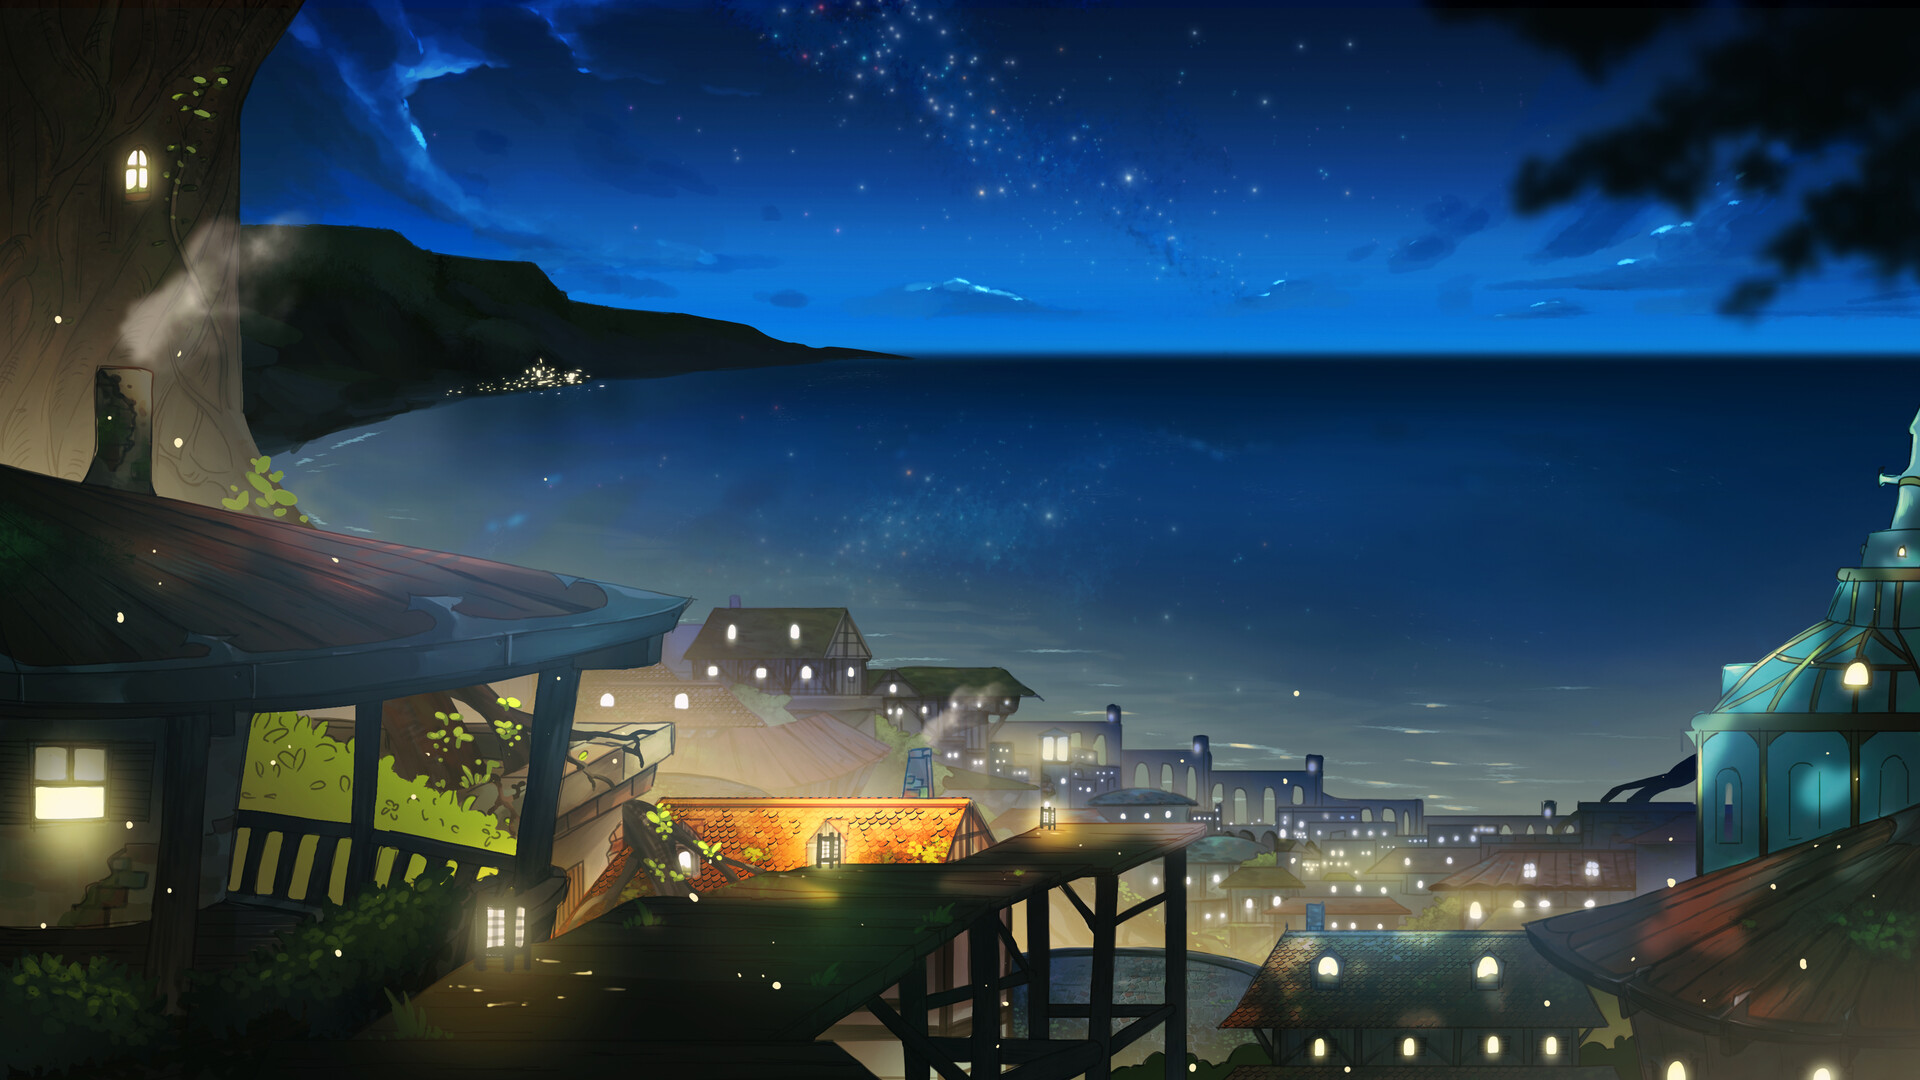 ArtStation - City under night sky